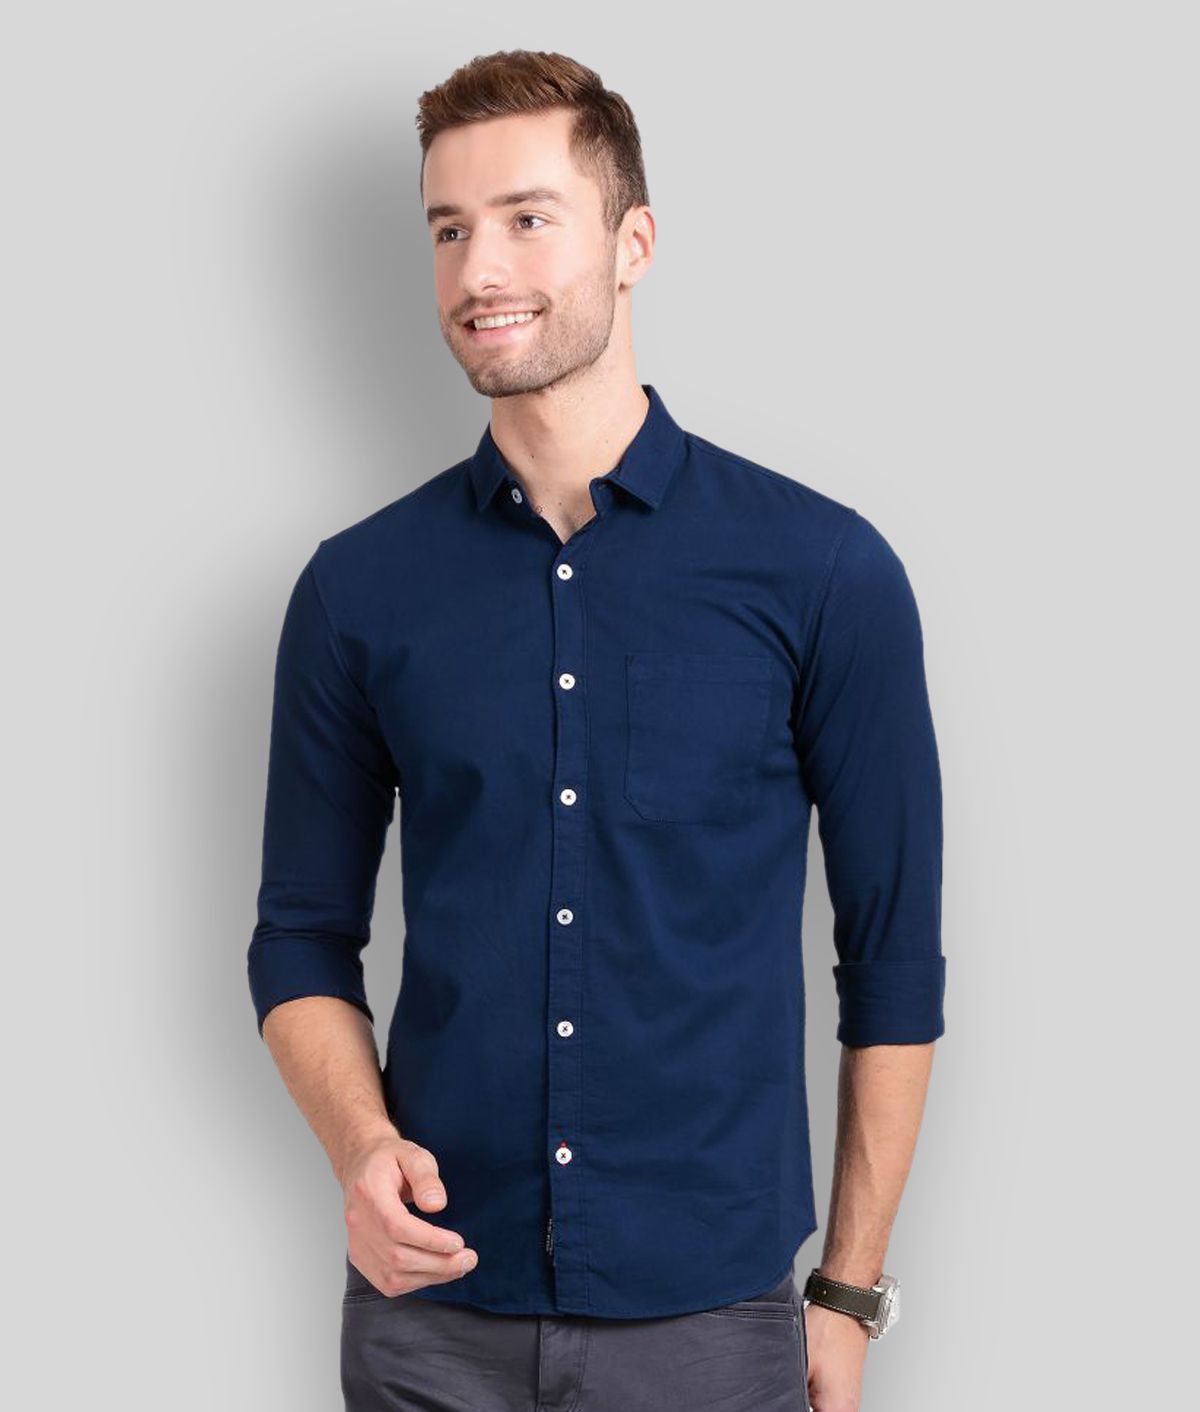     			Paul Street Cotton Blend Navy Shirt Single